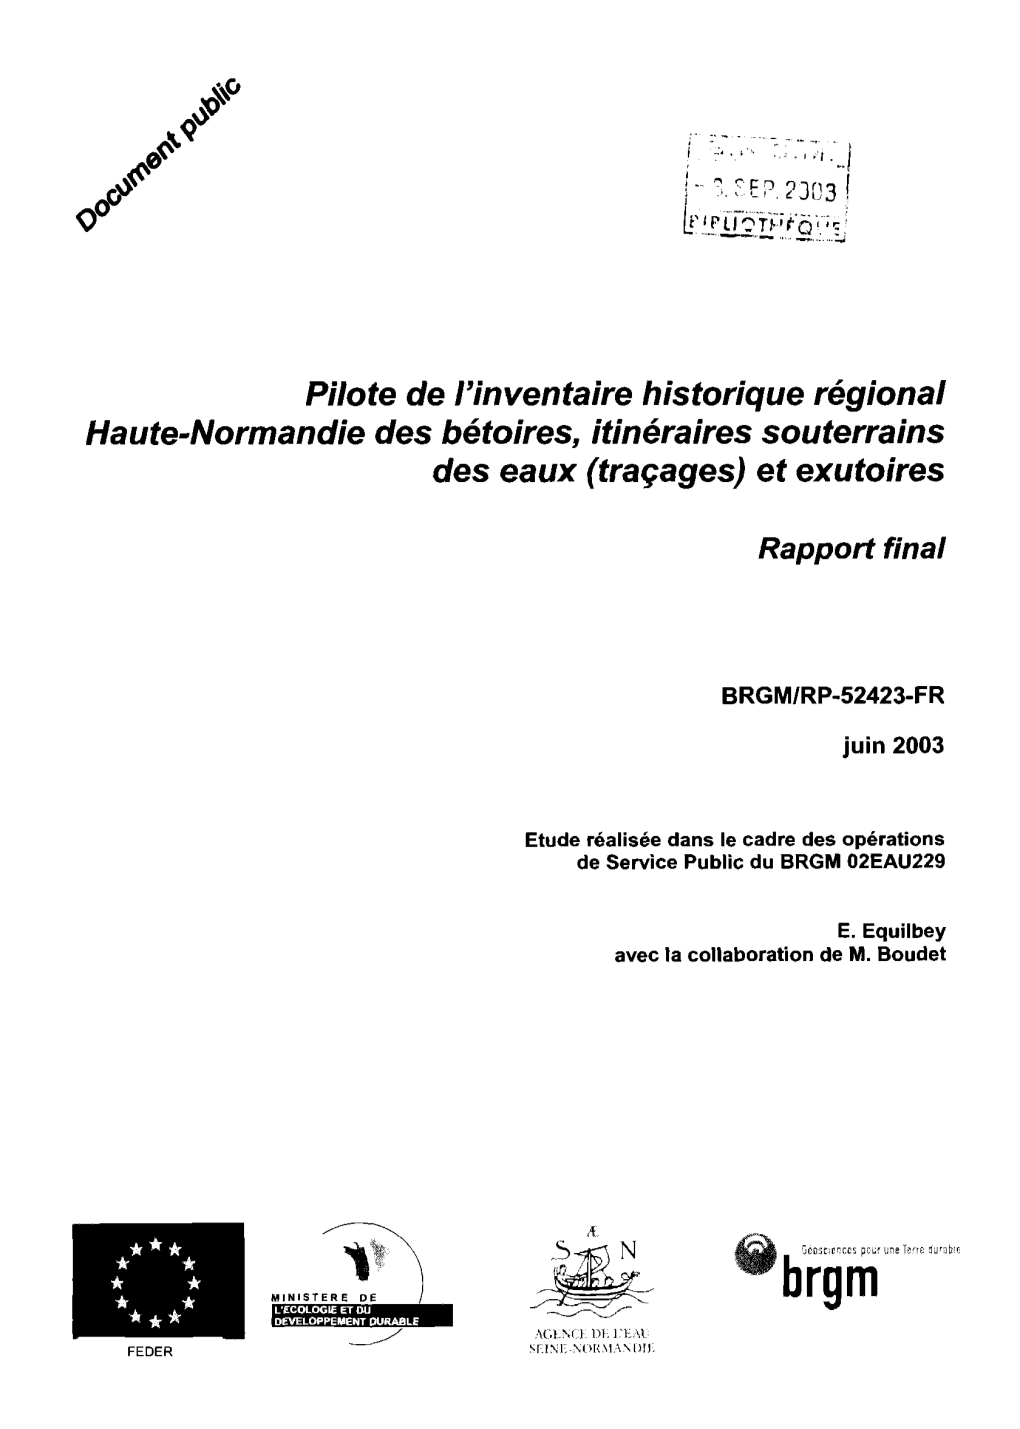 Pilote De L'inventaire Historique Régional Haute-Normandie Des Bé Toires, Itinéraires Sou Terrains Des Eaux (Traçages) Et Exutoires